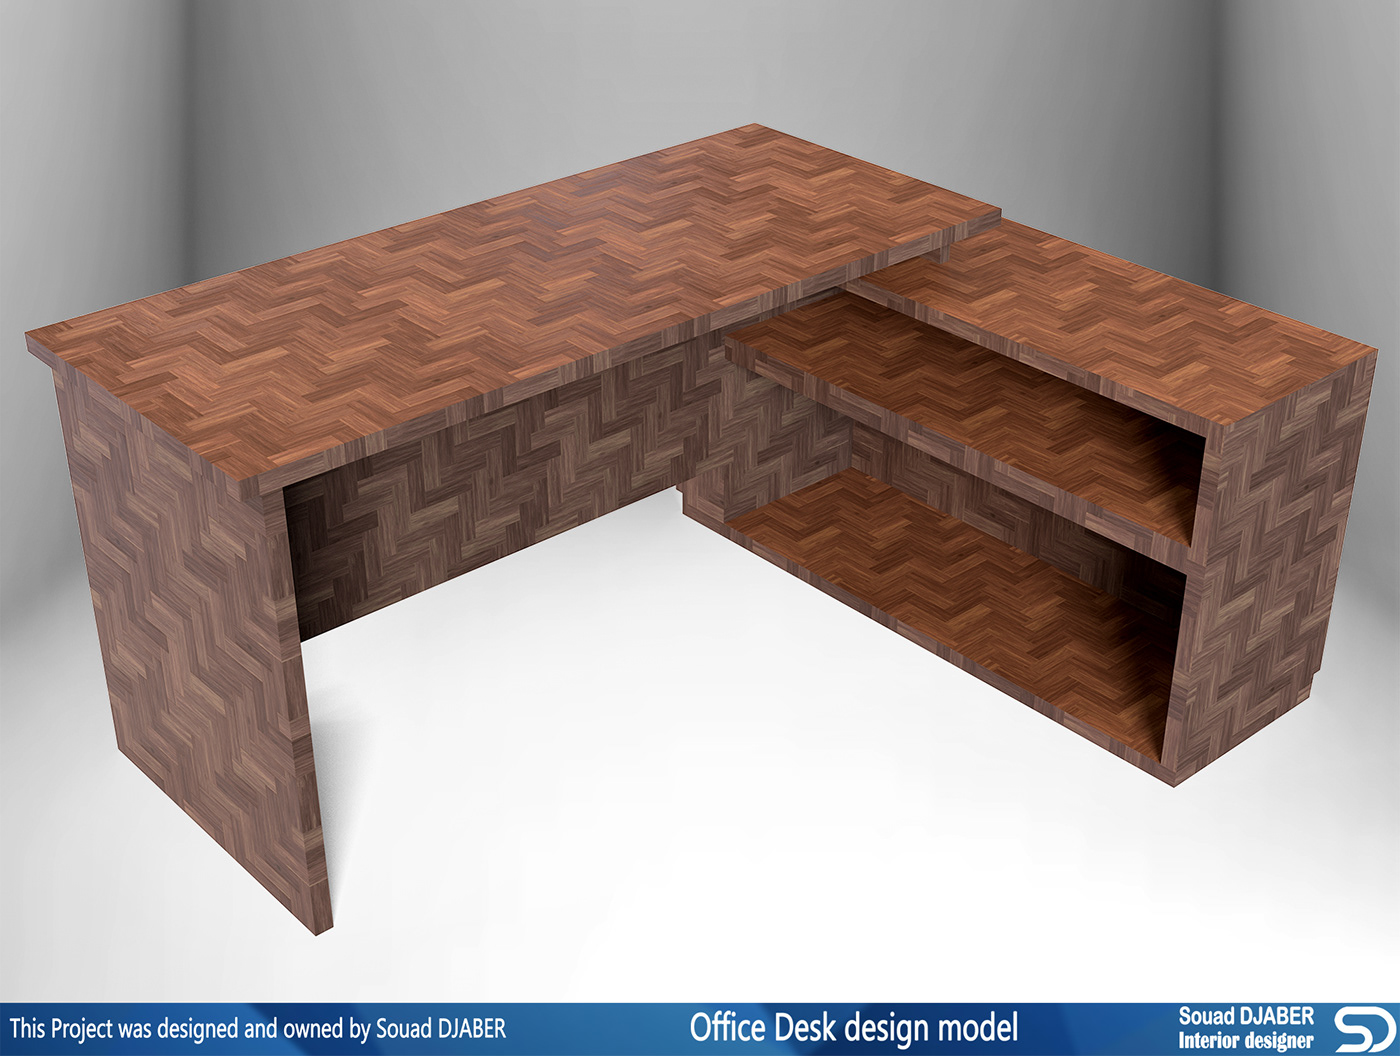 office desk desks interiors office furniture interior design  Souad djaber CGI 3D model